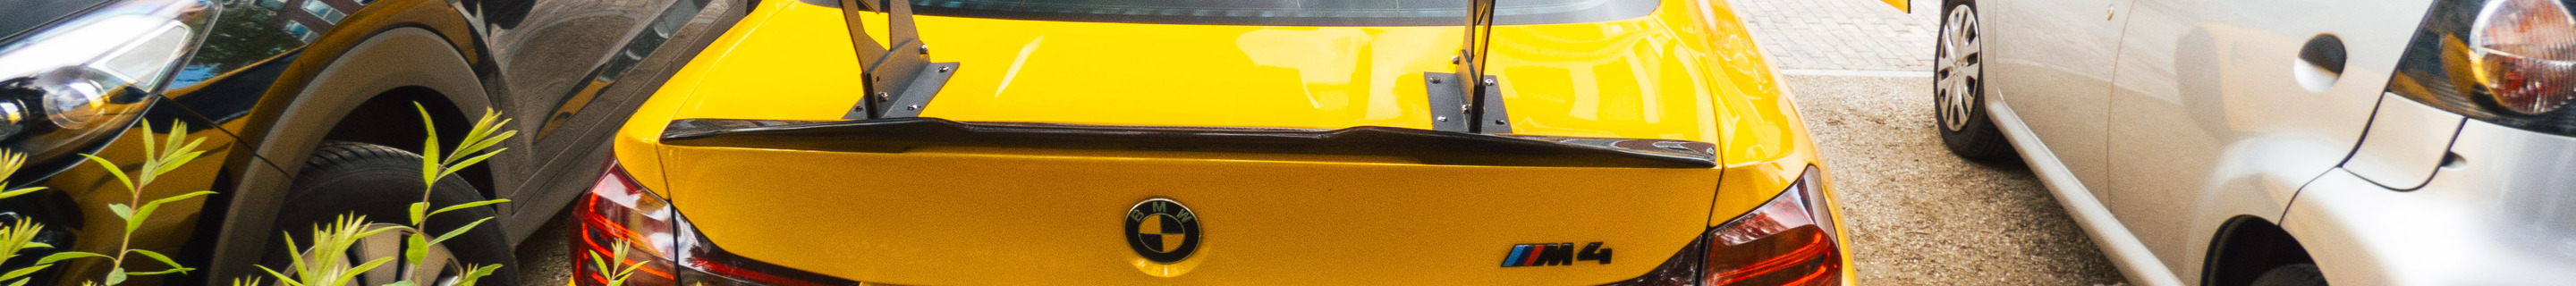 BMW M4 F82 Coupé